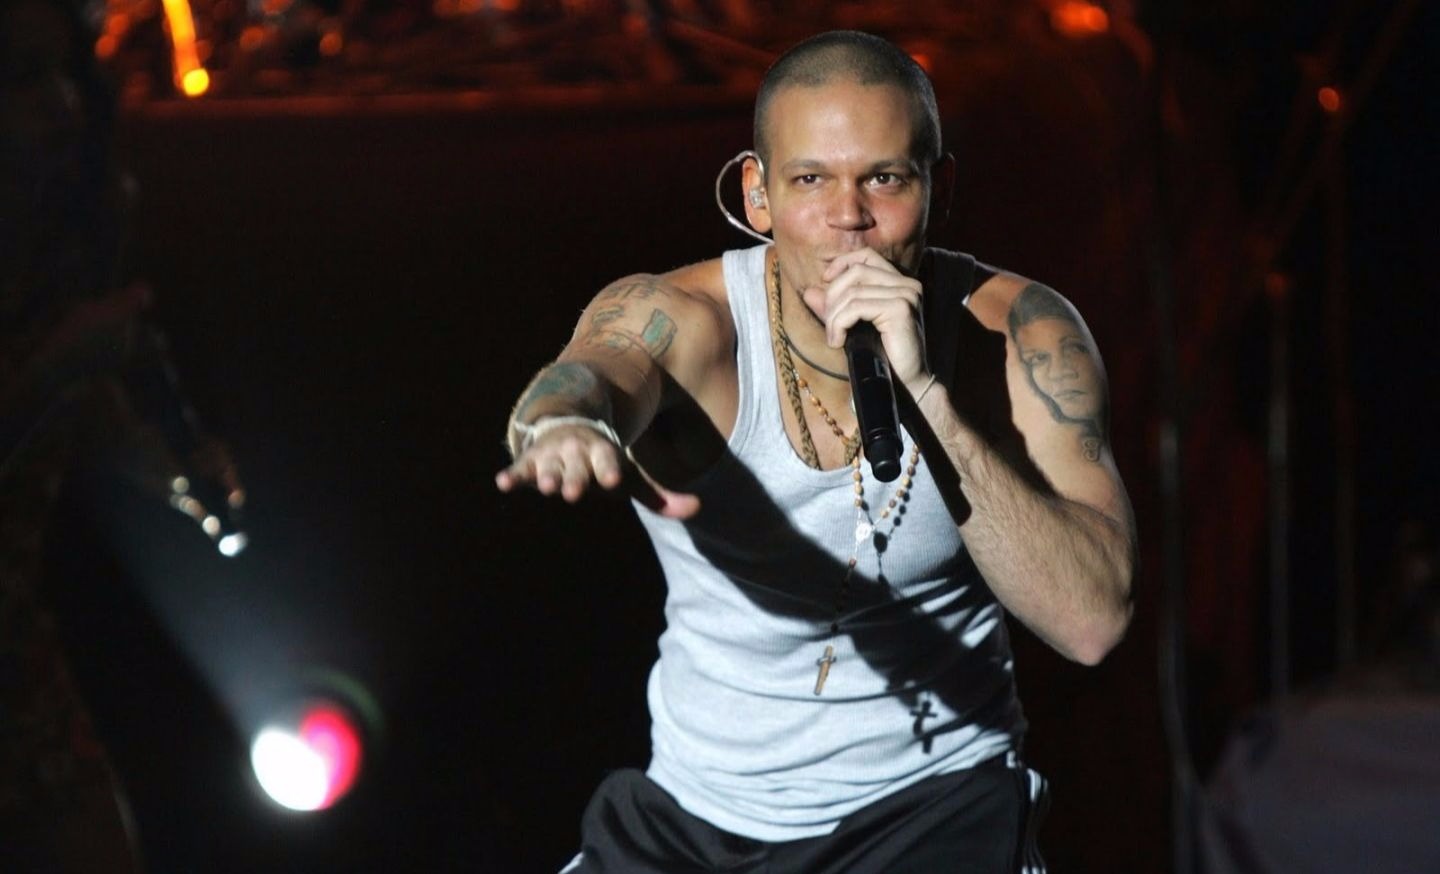 The artist Residente performs alongside Calle 13 (FILE).